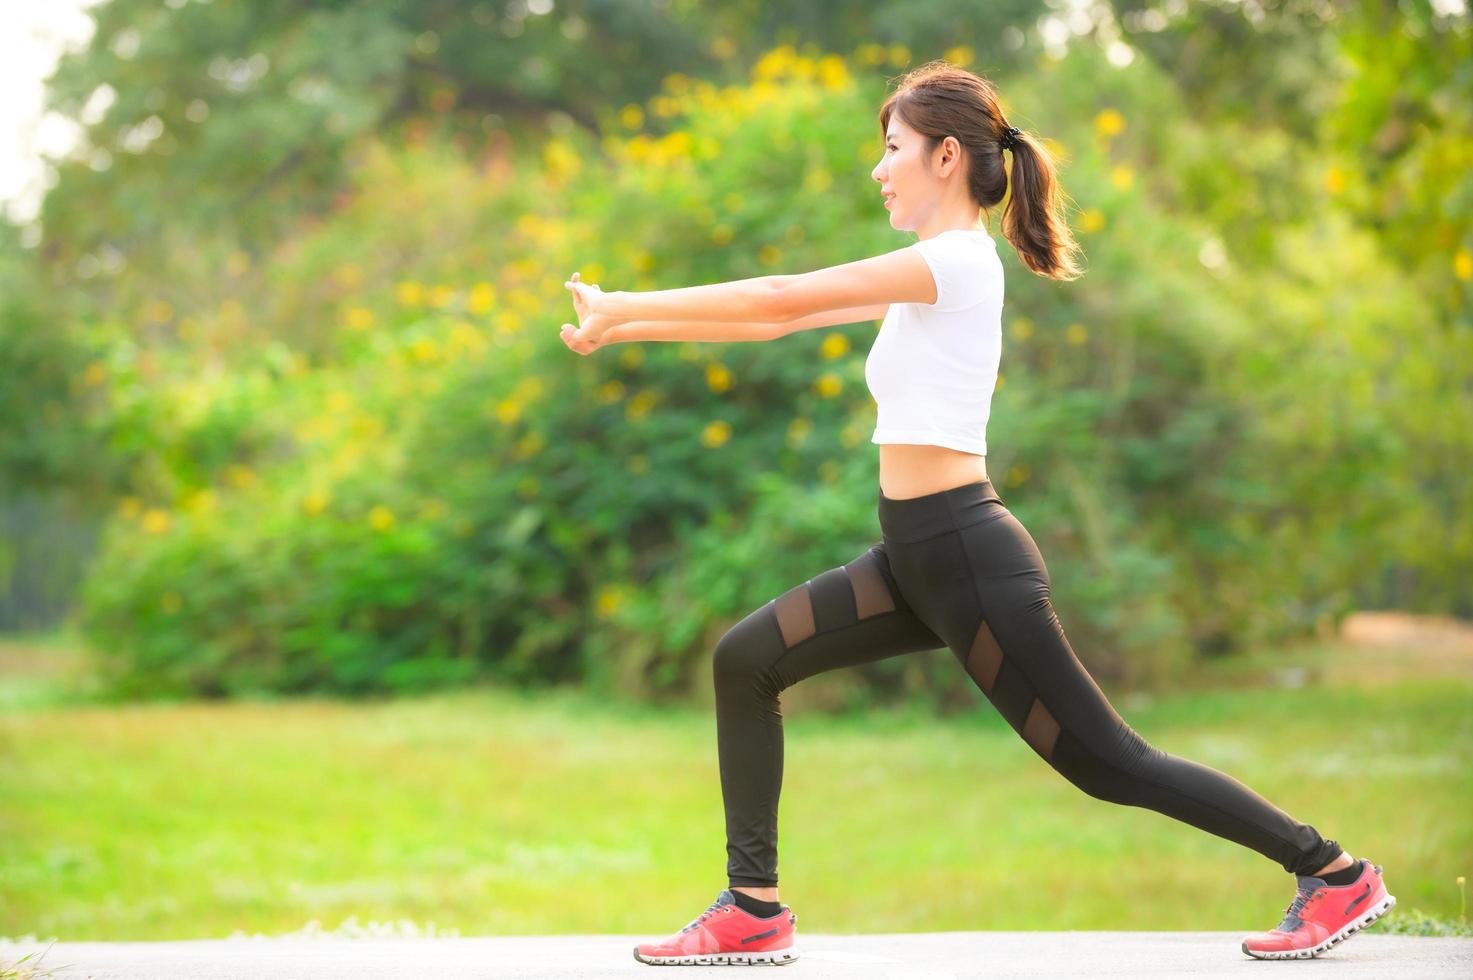 una bella donna asiatica si sta riscaldando, per rendere flessibili i muscoli prima di andare a fare jogging foto